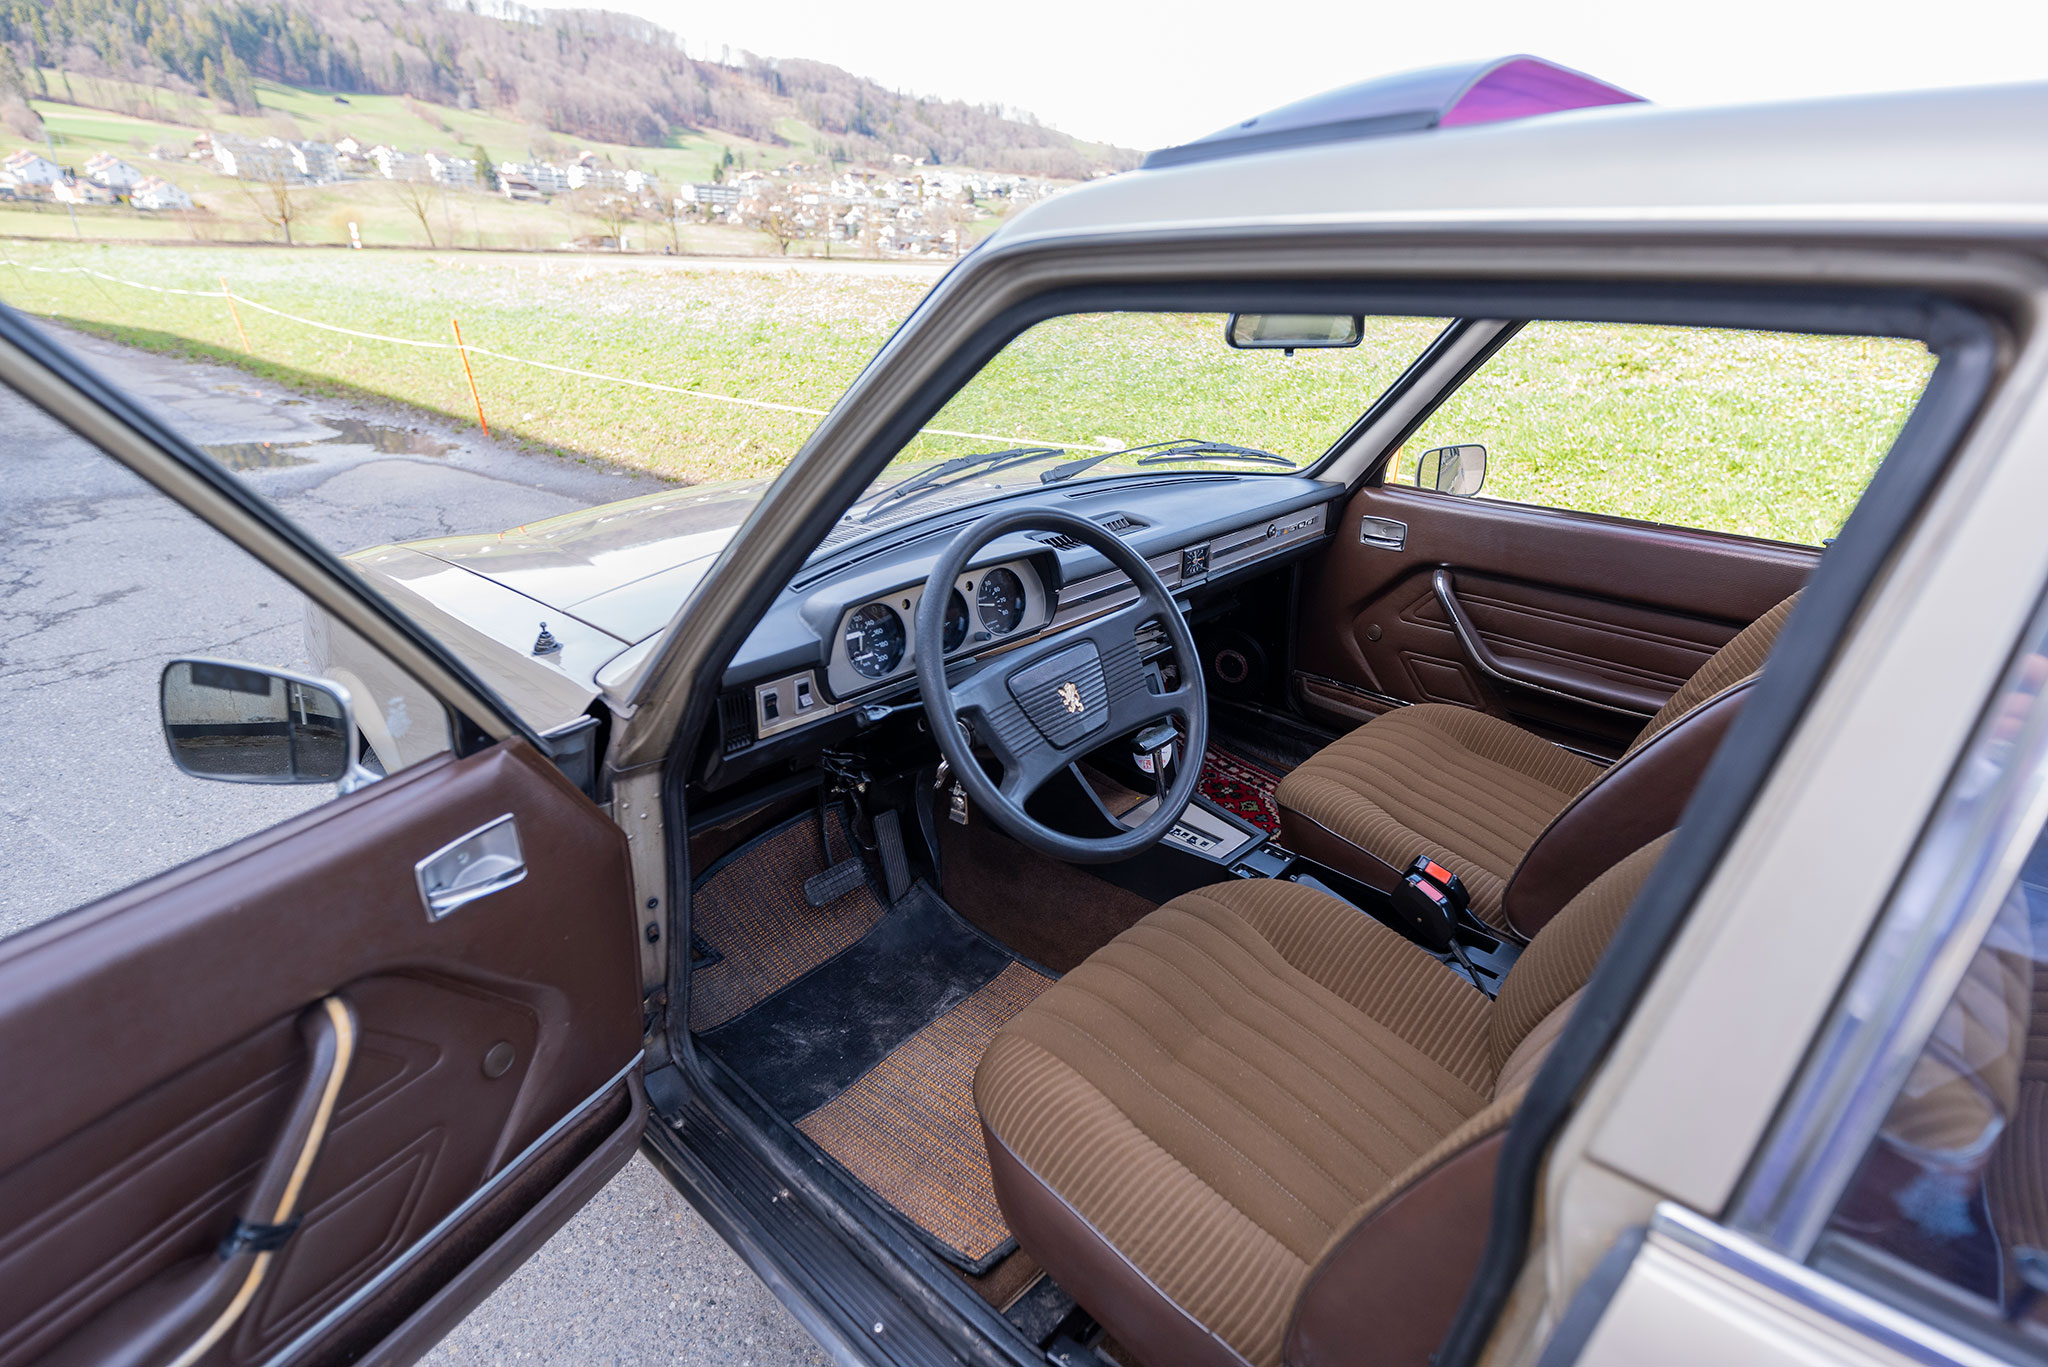 1978 Peugeot 504 TI automatique – intérieur en velours en bel état et toit ouvrant en acier.